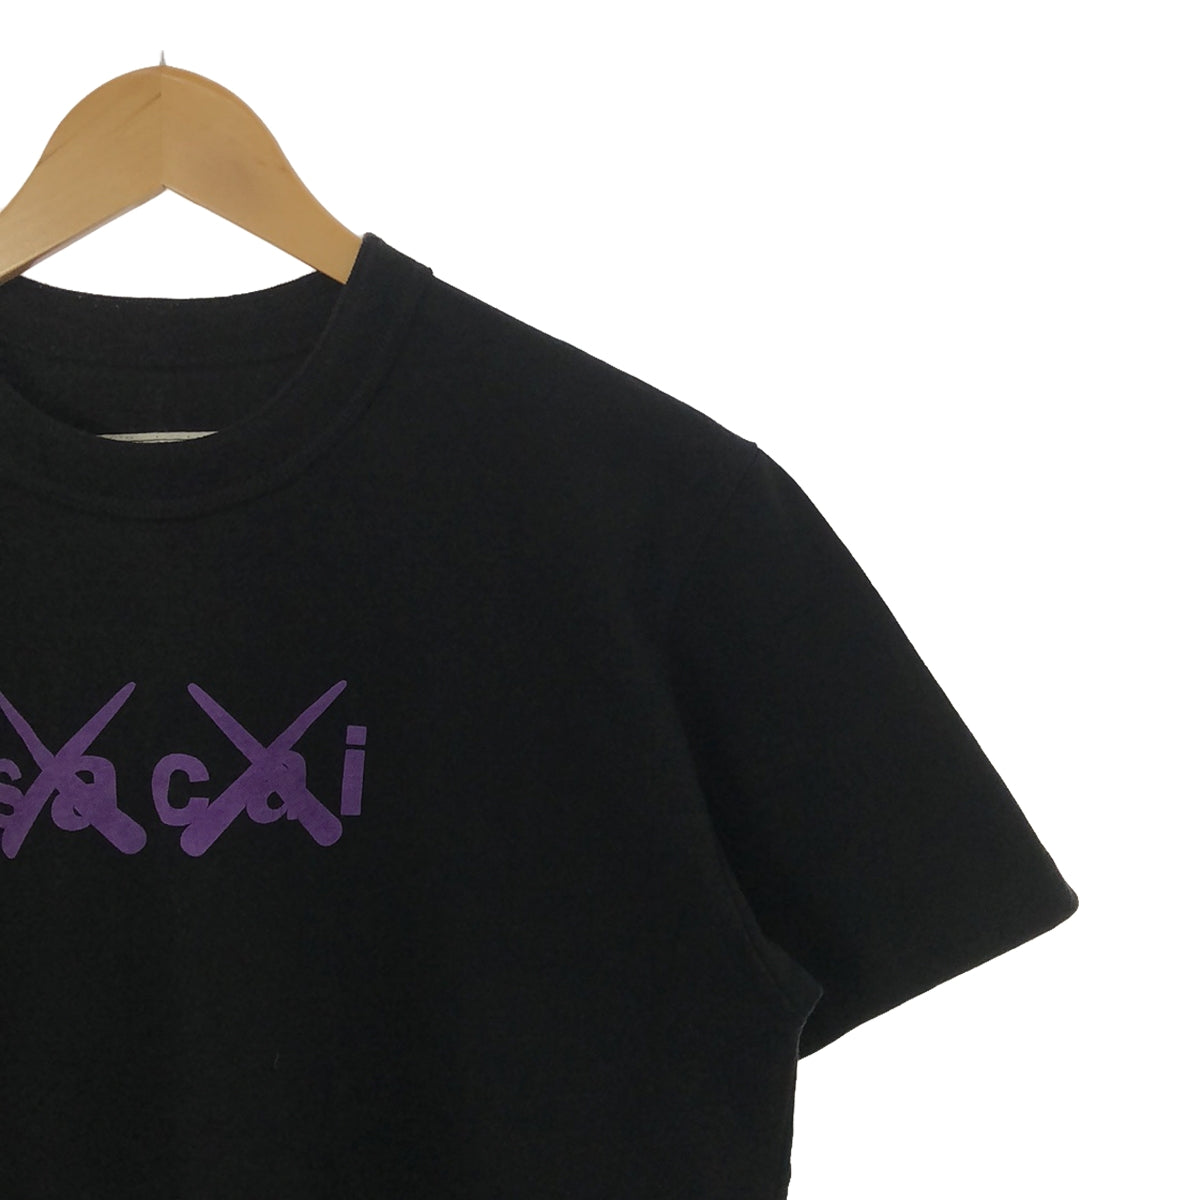 sacai / サカイ | × KAWS / カウズ Flock Print T-Shirt / フロック プリント Tシャツ | 2 | メンズ